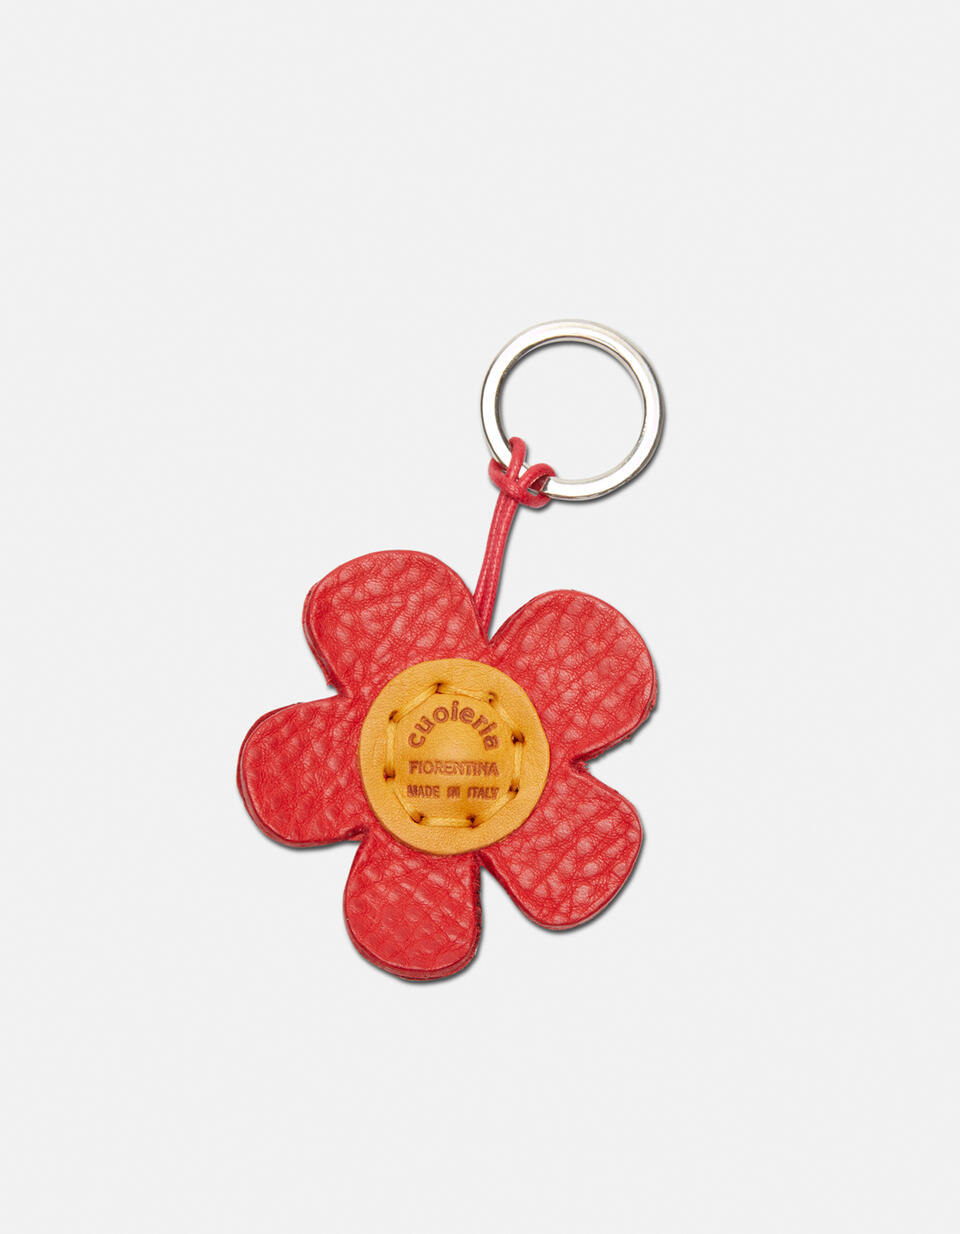 Flower leather Keychain - Key holders - Women's Accessories | Accessories ROSSO - Key holders - Women's Accessories | AccessoriesCuoieria Fiorentina